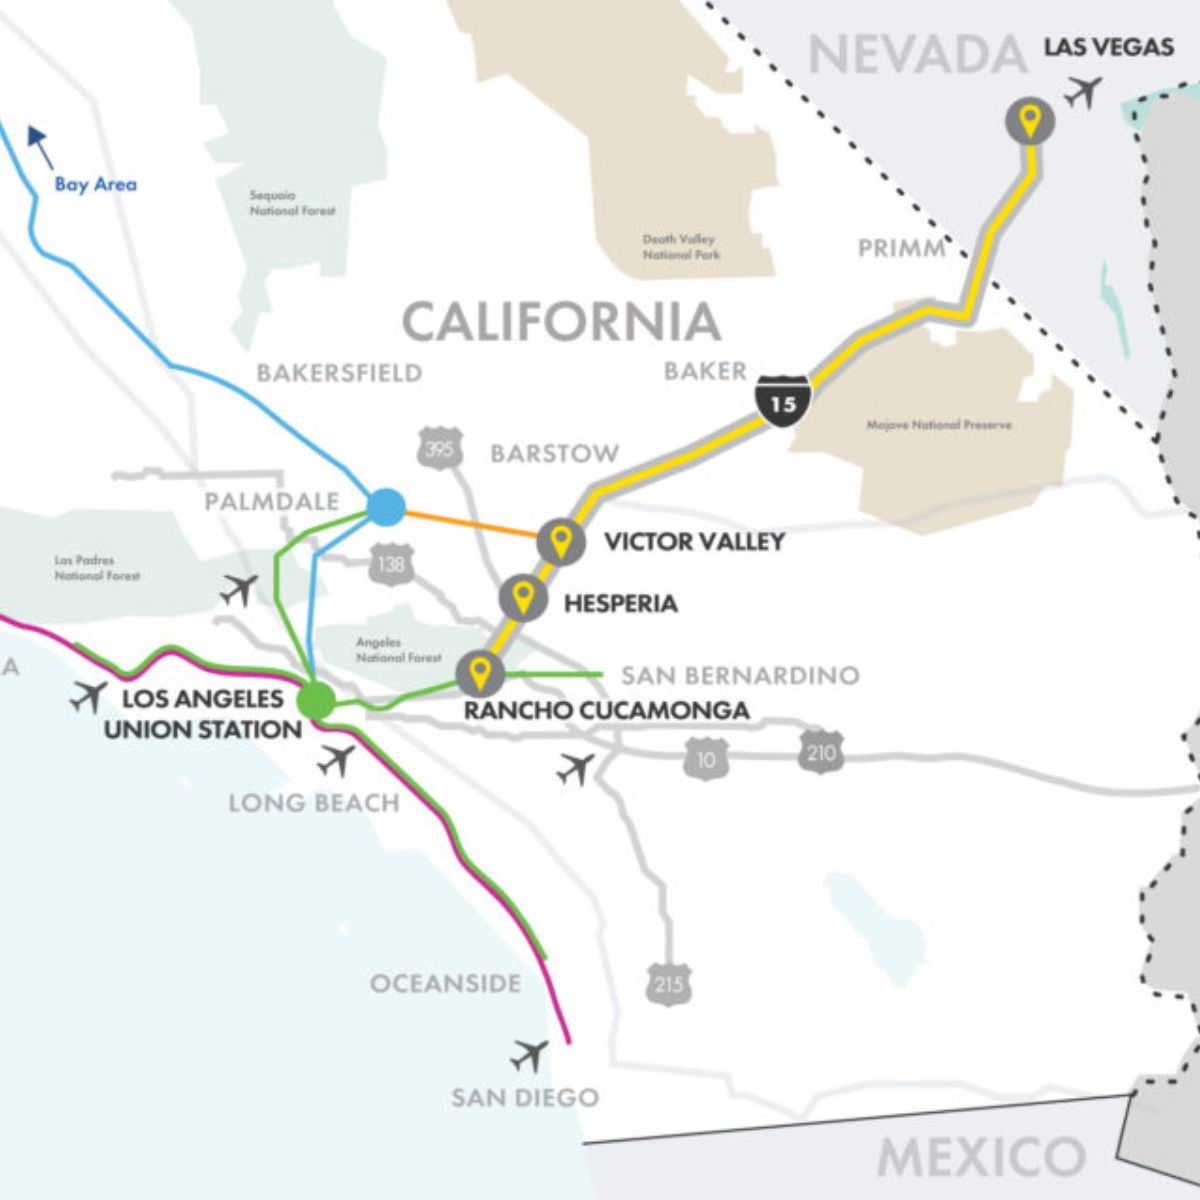 Mapa de trenes con la ruta de Los Ángeles a Las Vegas.